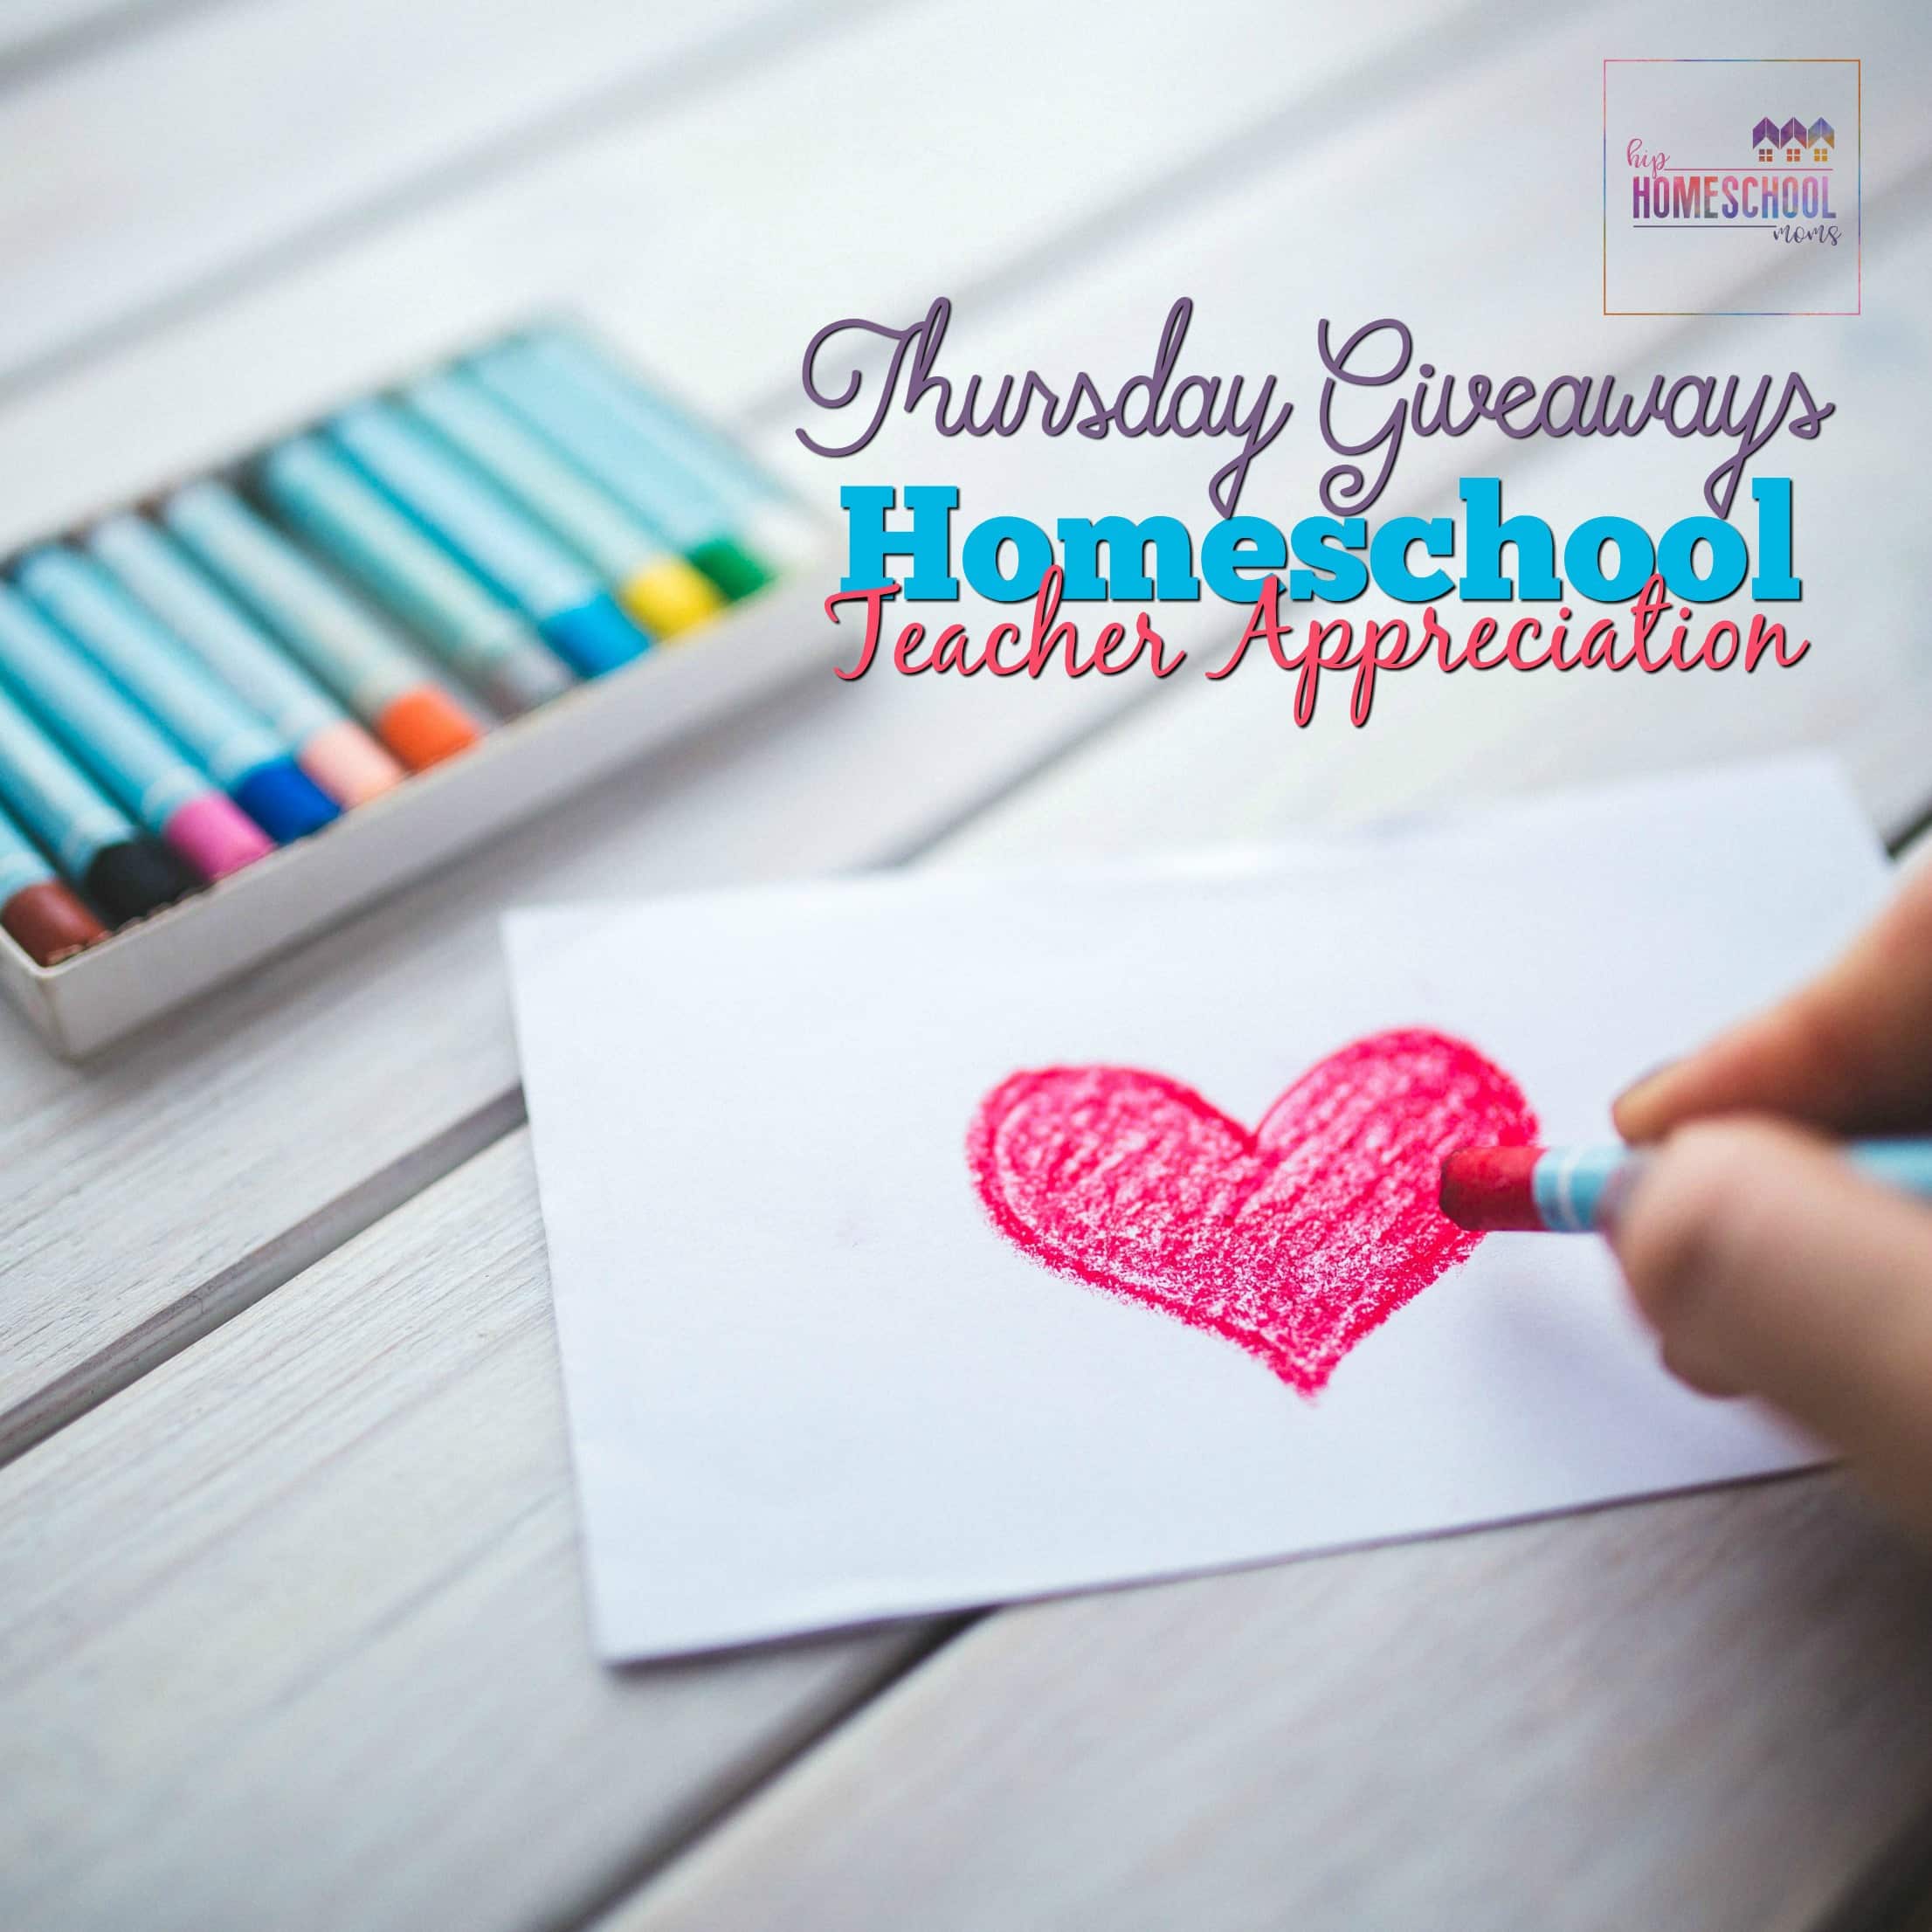 2017 Homeschool Teacher Appreciation Thursday Giveaways